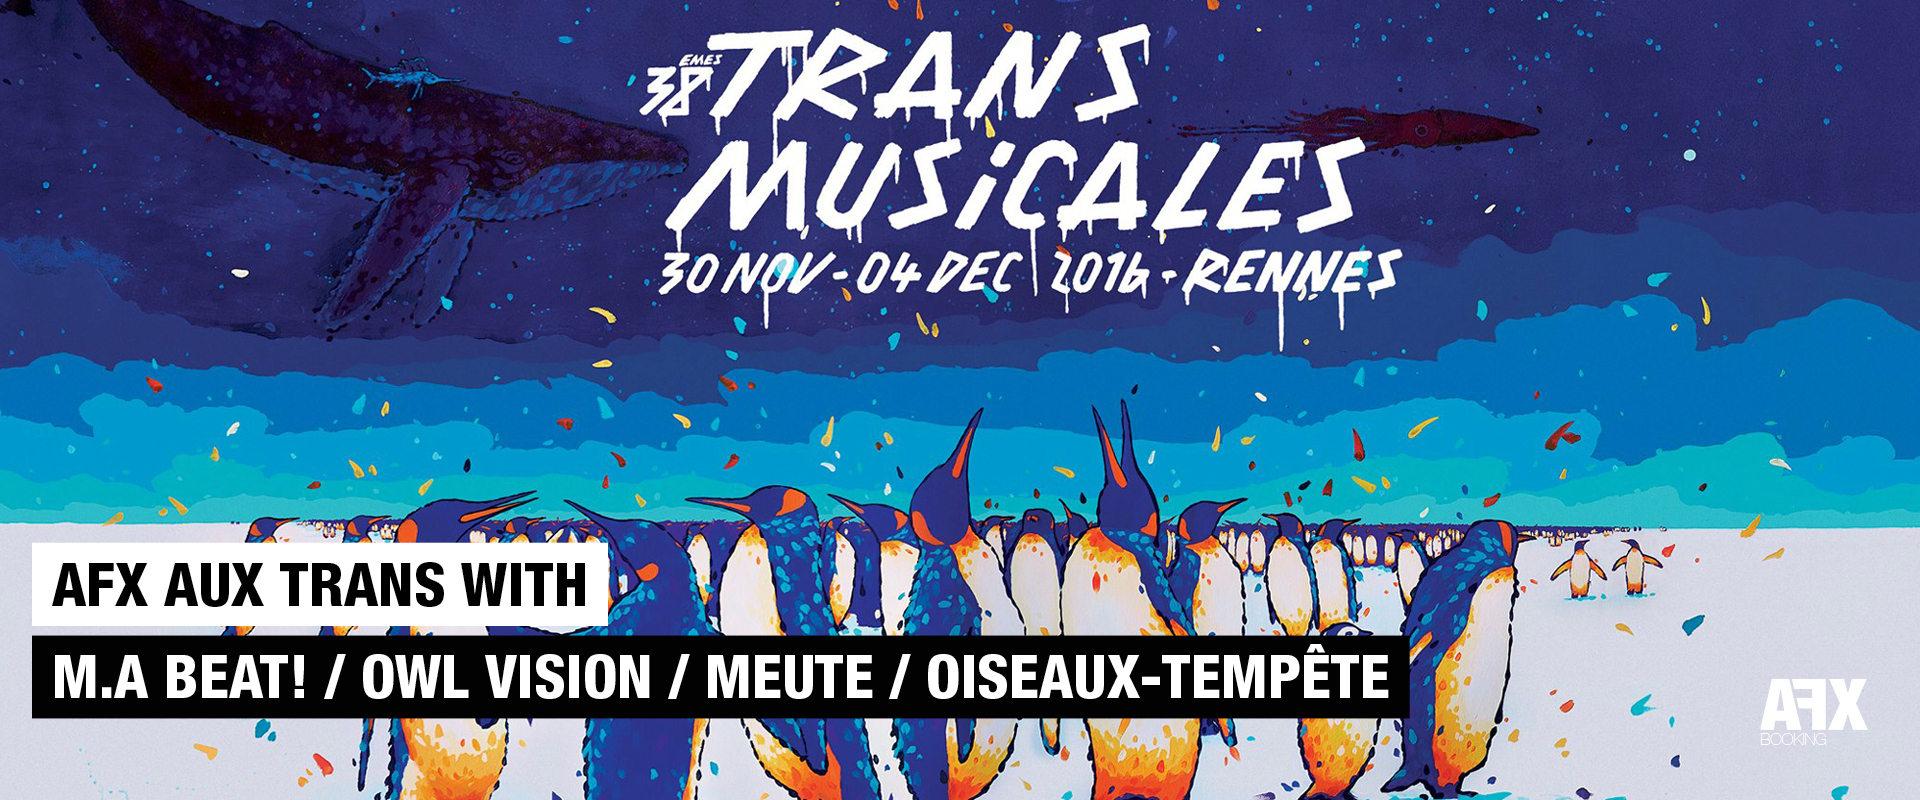 AFX AUX TRANS MUSICALES ET BARS EN TRANS WITH M.A BEAT! / OWL VISION / MEUTE / OISEAUX-TEMPÊTE